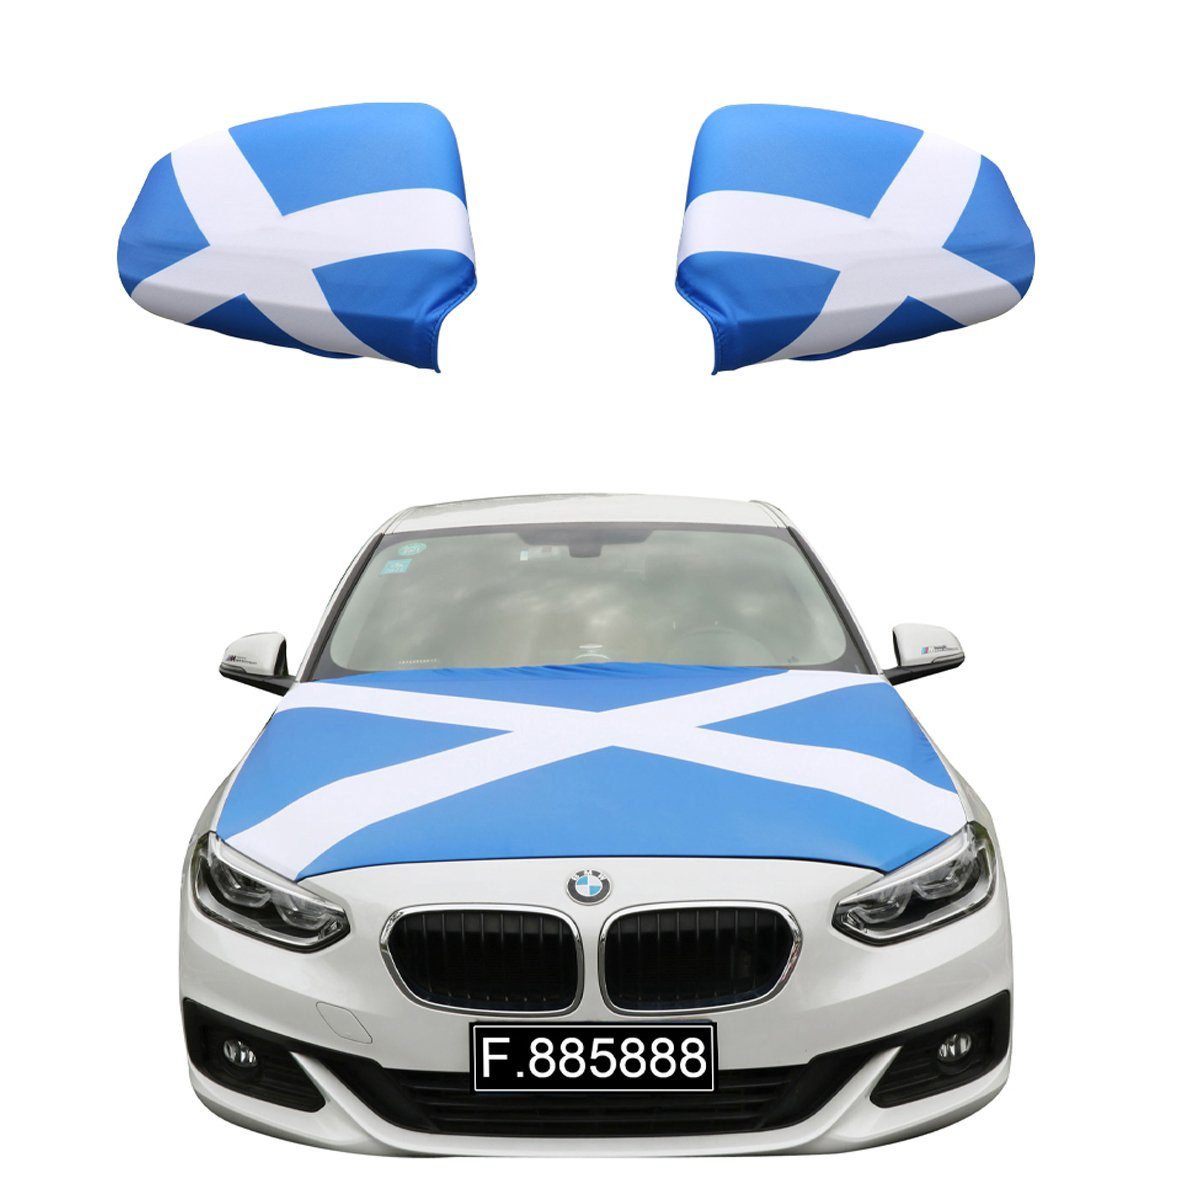 Sonia Originelli Fahne Fanset "Schottland" Scotland für PKW 115 ca. gängigen Außenspiegel x Modelle, Flagge: alle 150cm Motorhauben Flagge, Motorhaube